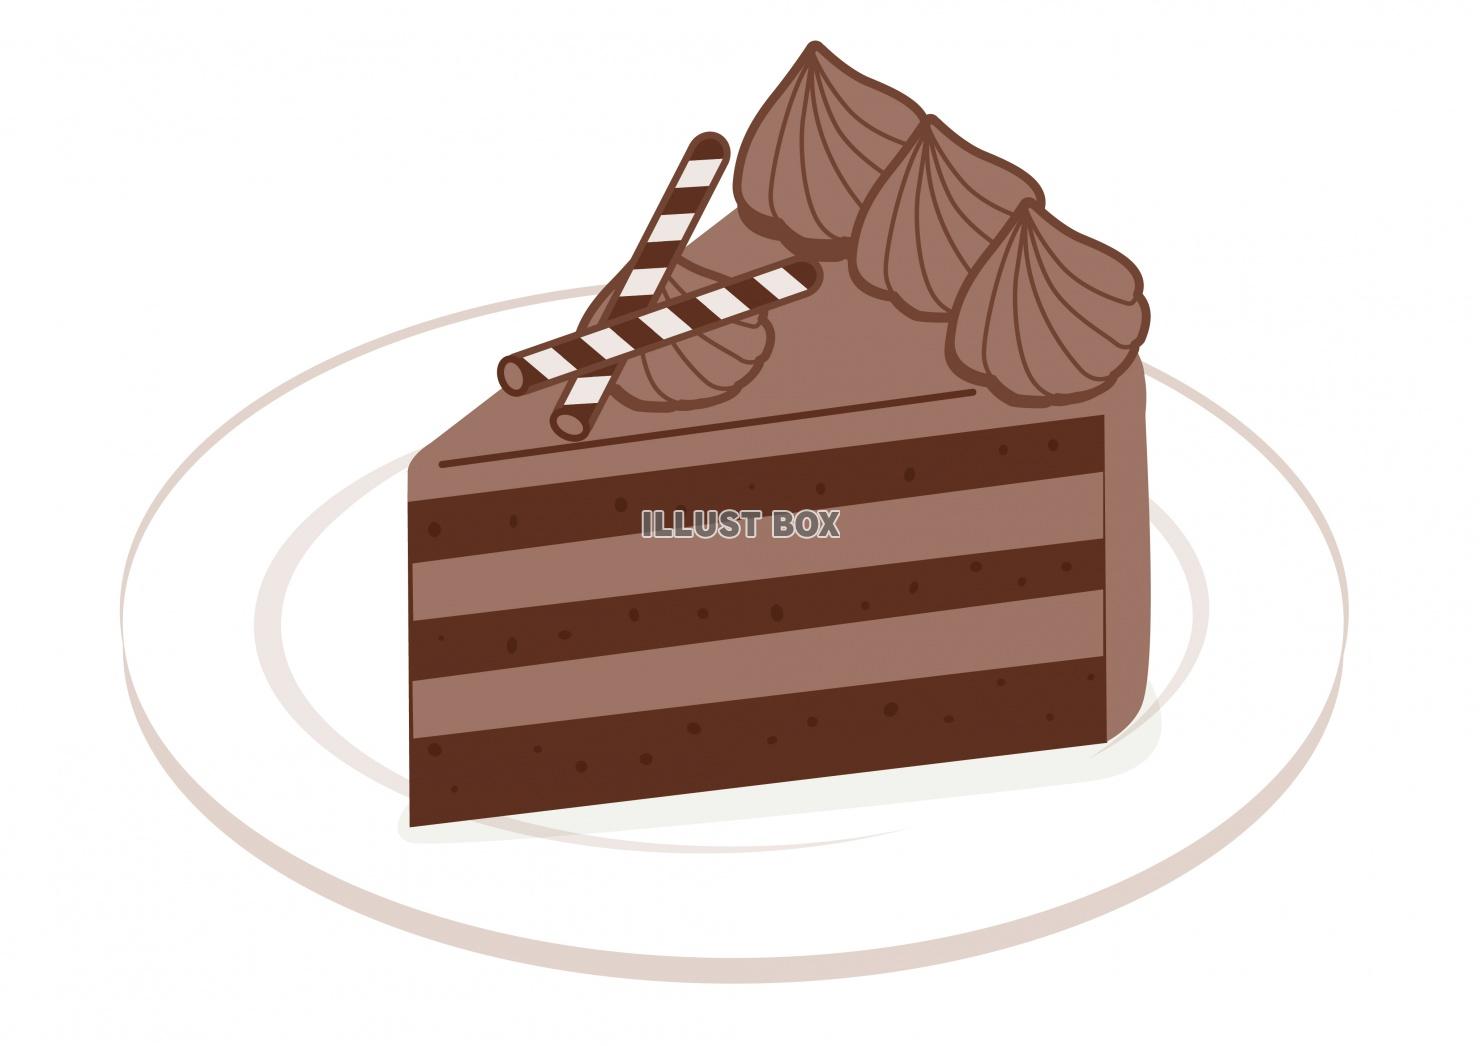 スイーツシリーズ★チョコレートケーキ